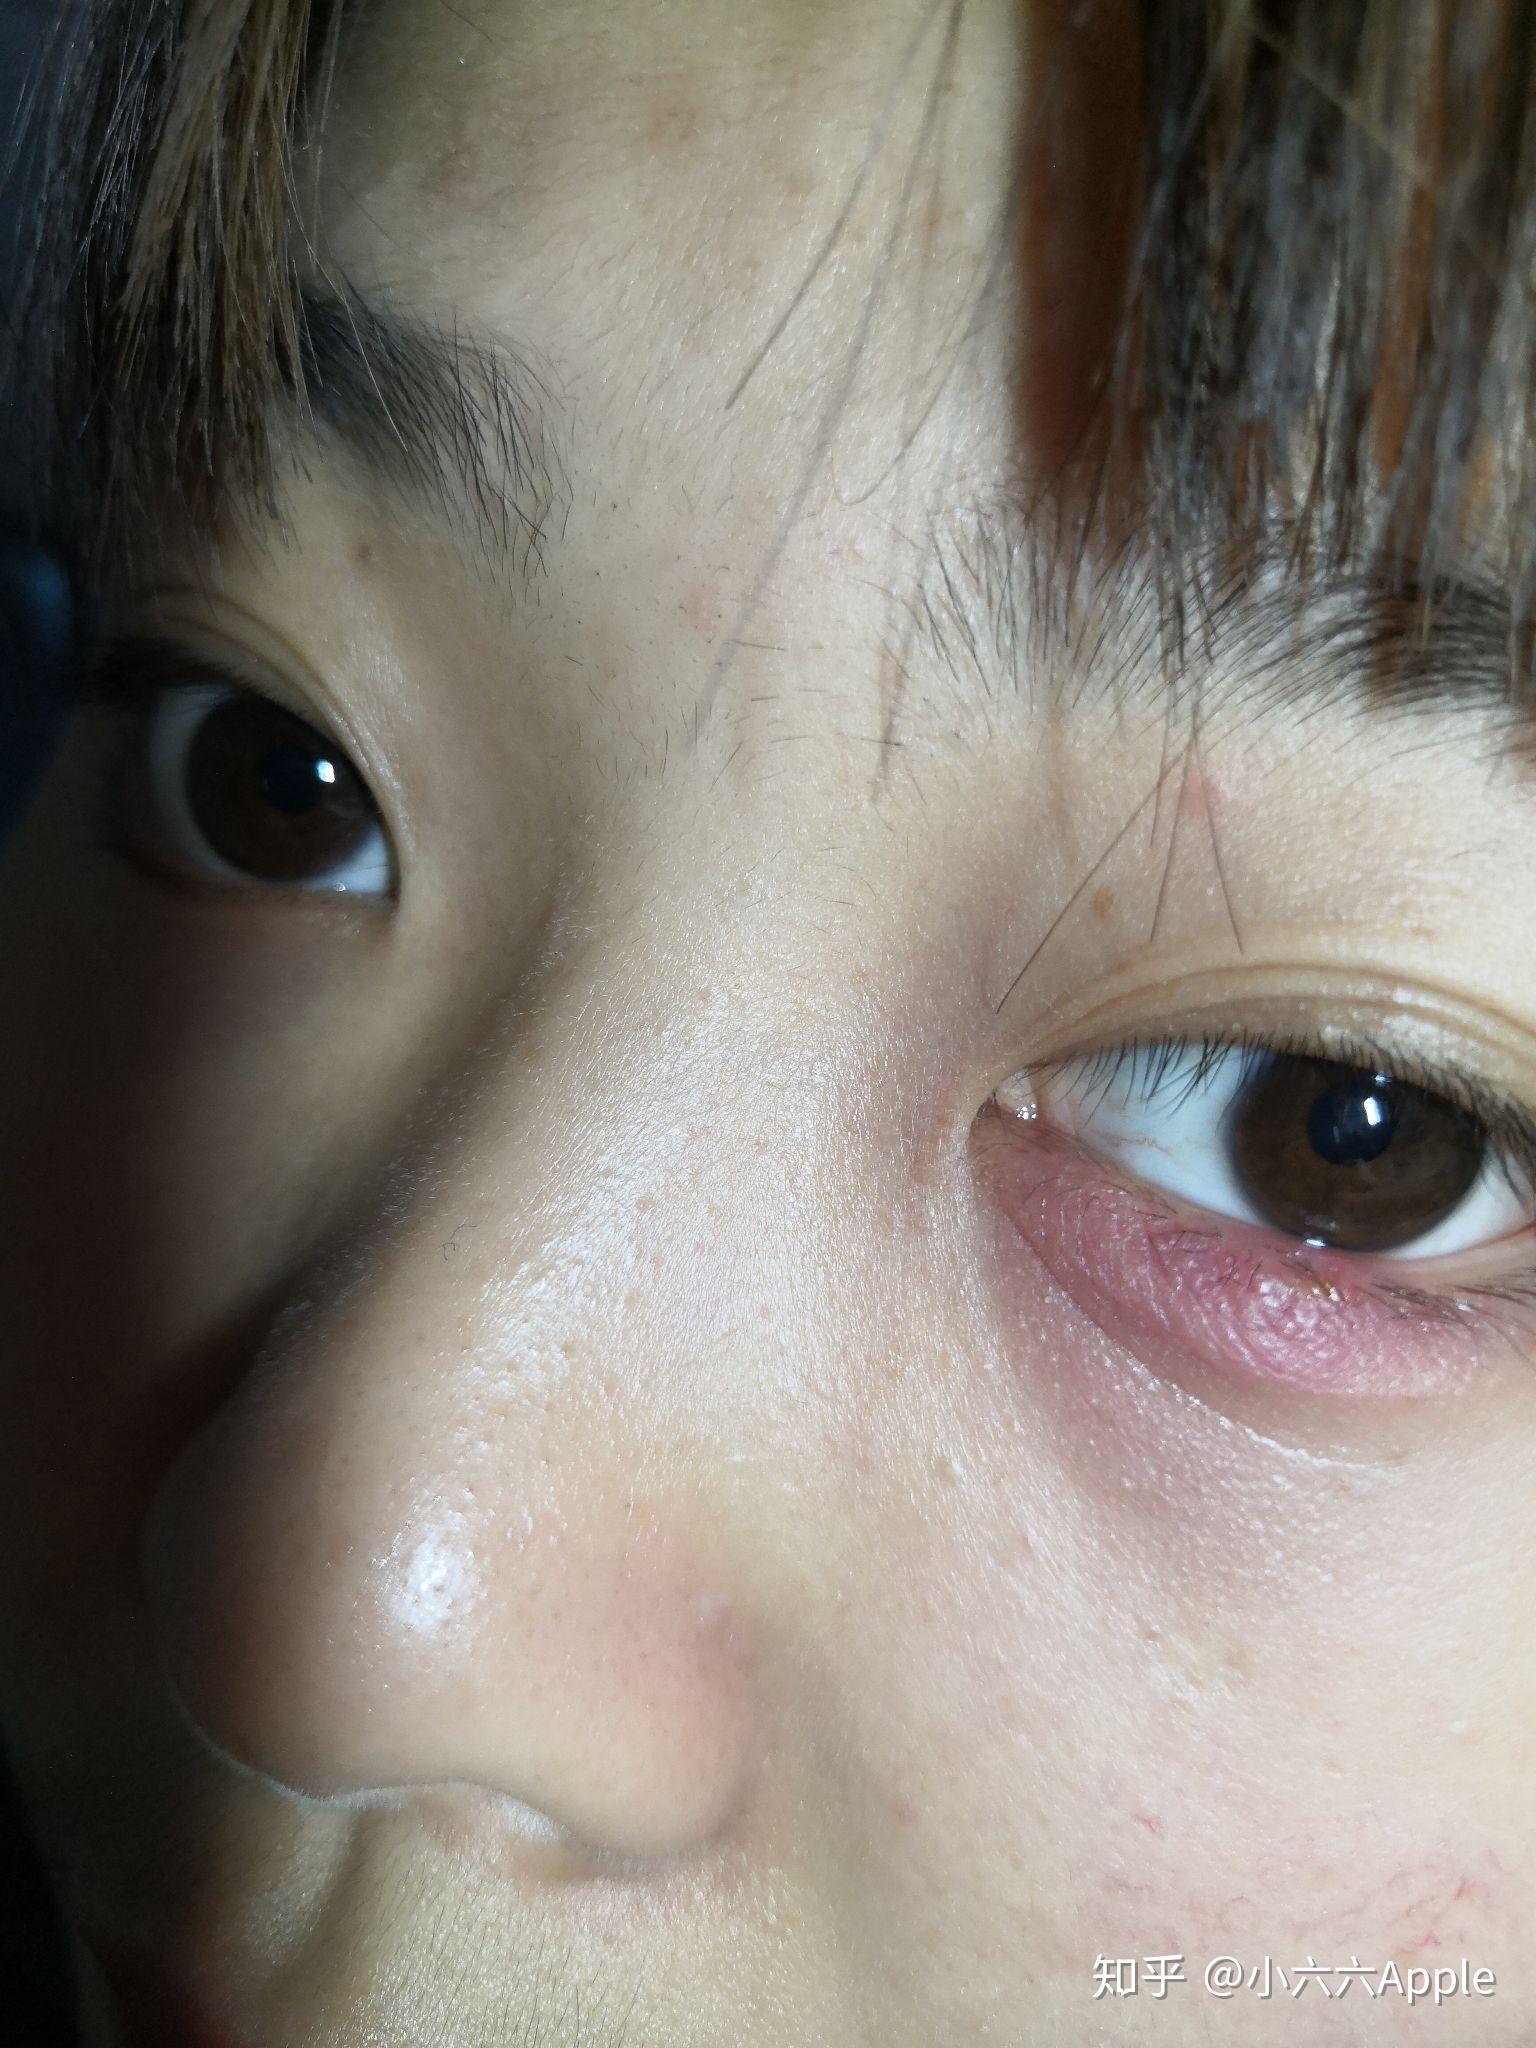 请问这样眼睛红肿是什么症状？_百度知道